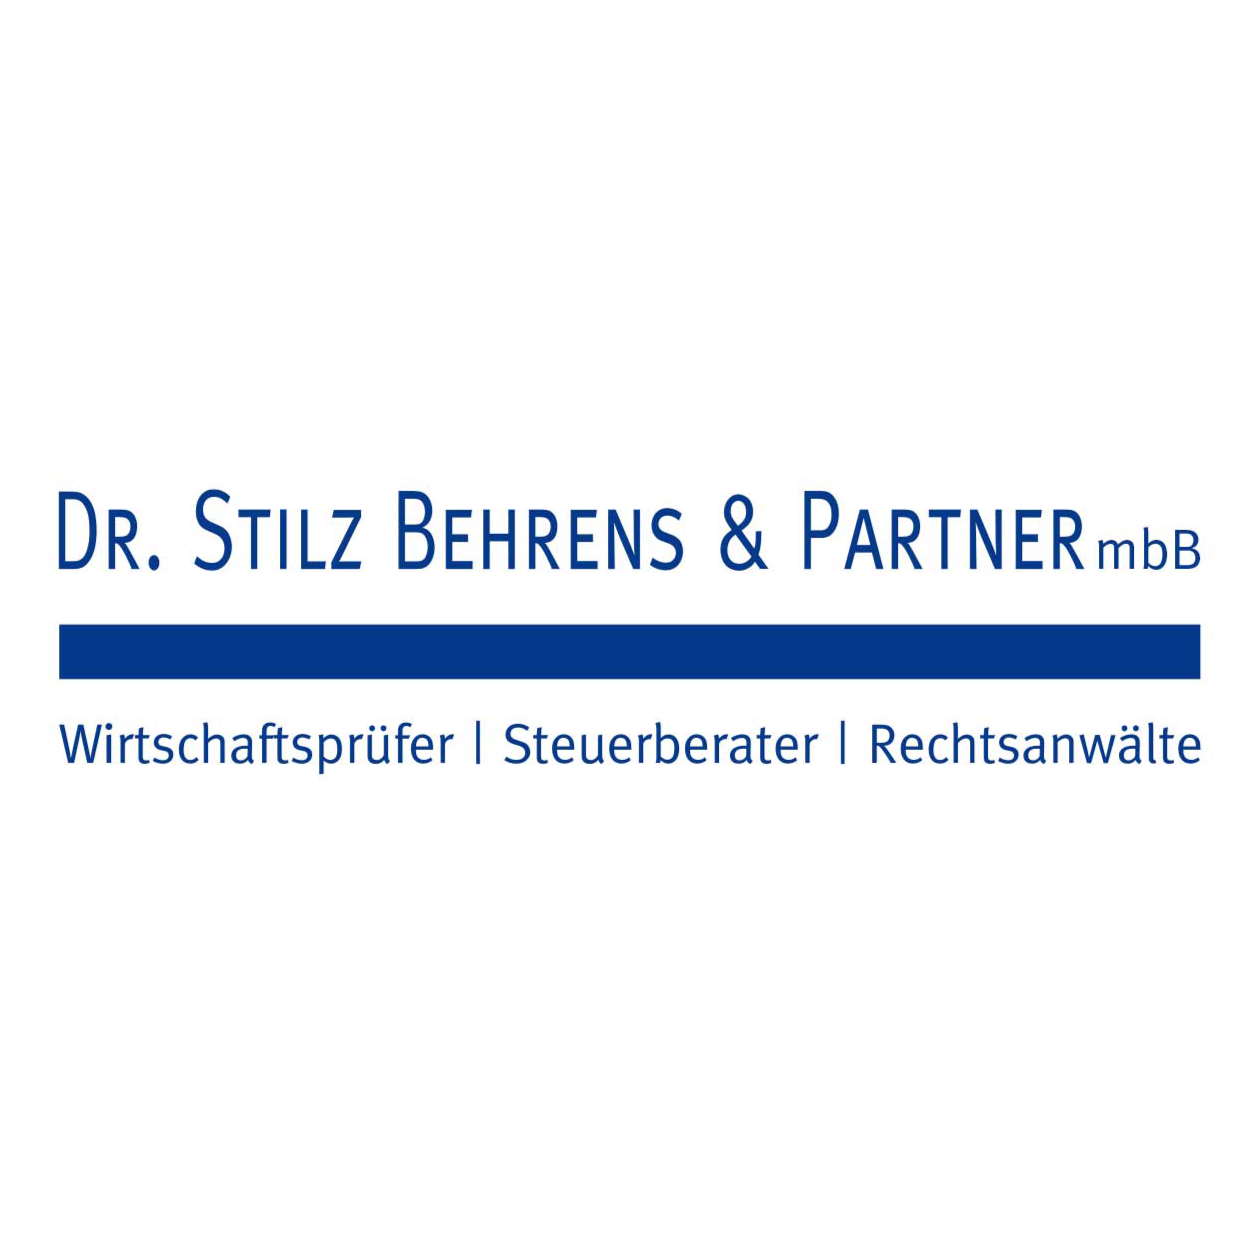 Dr. Stilz Behrens & Partner mbB, Wirtschaftsprüfer, Steuerberater, Rechtsanwälte